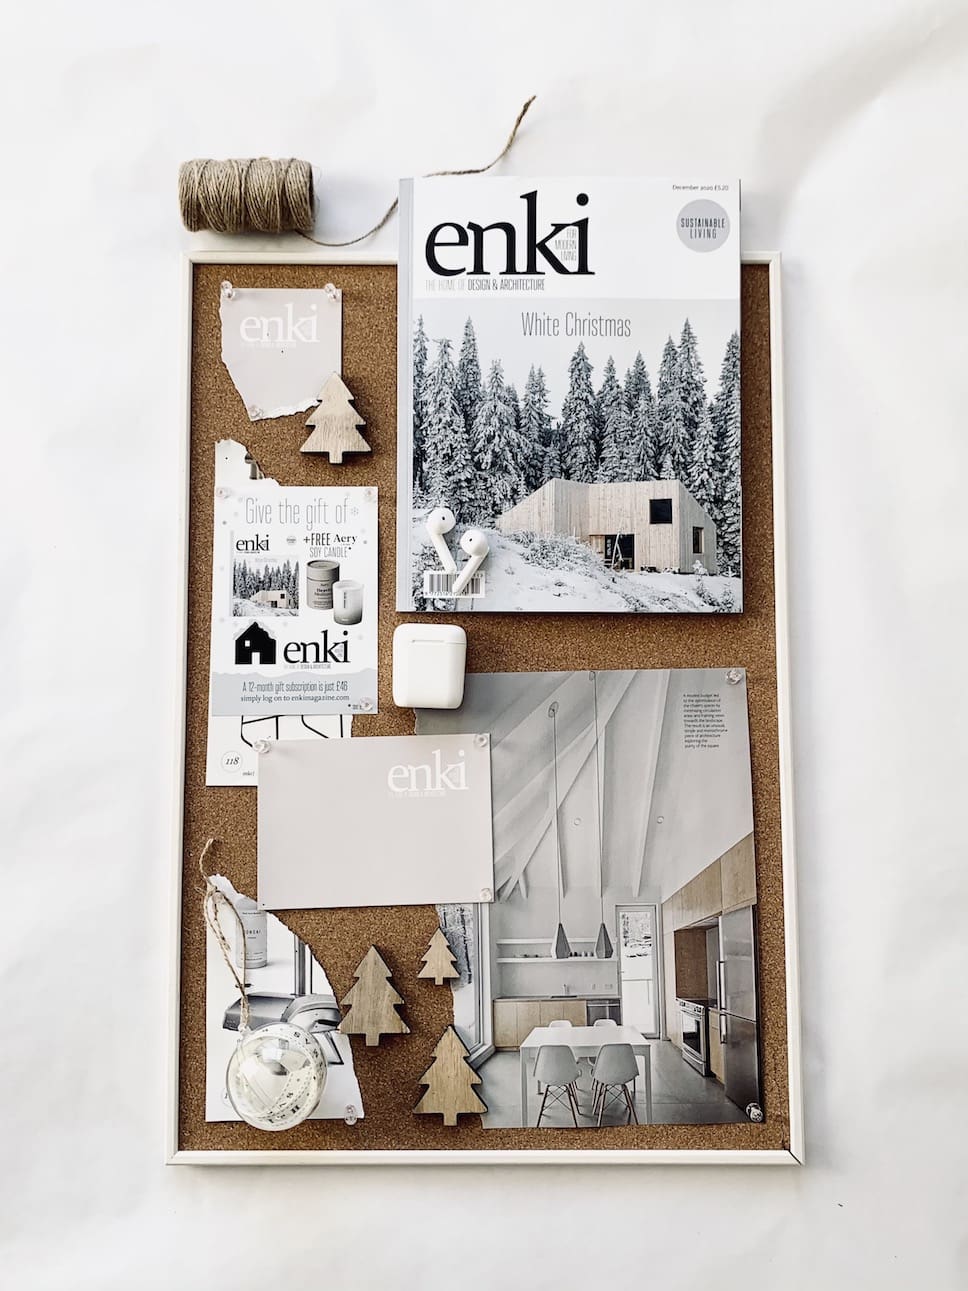 enki’s Gift